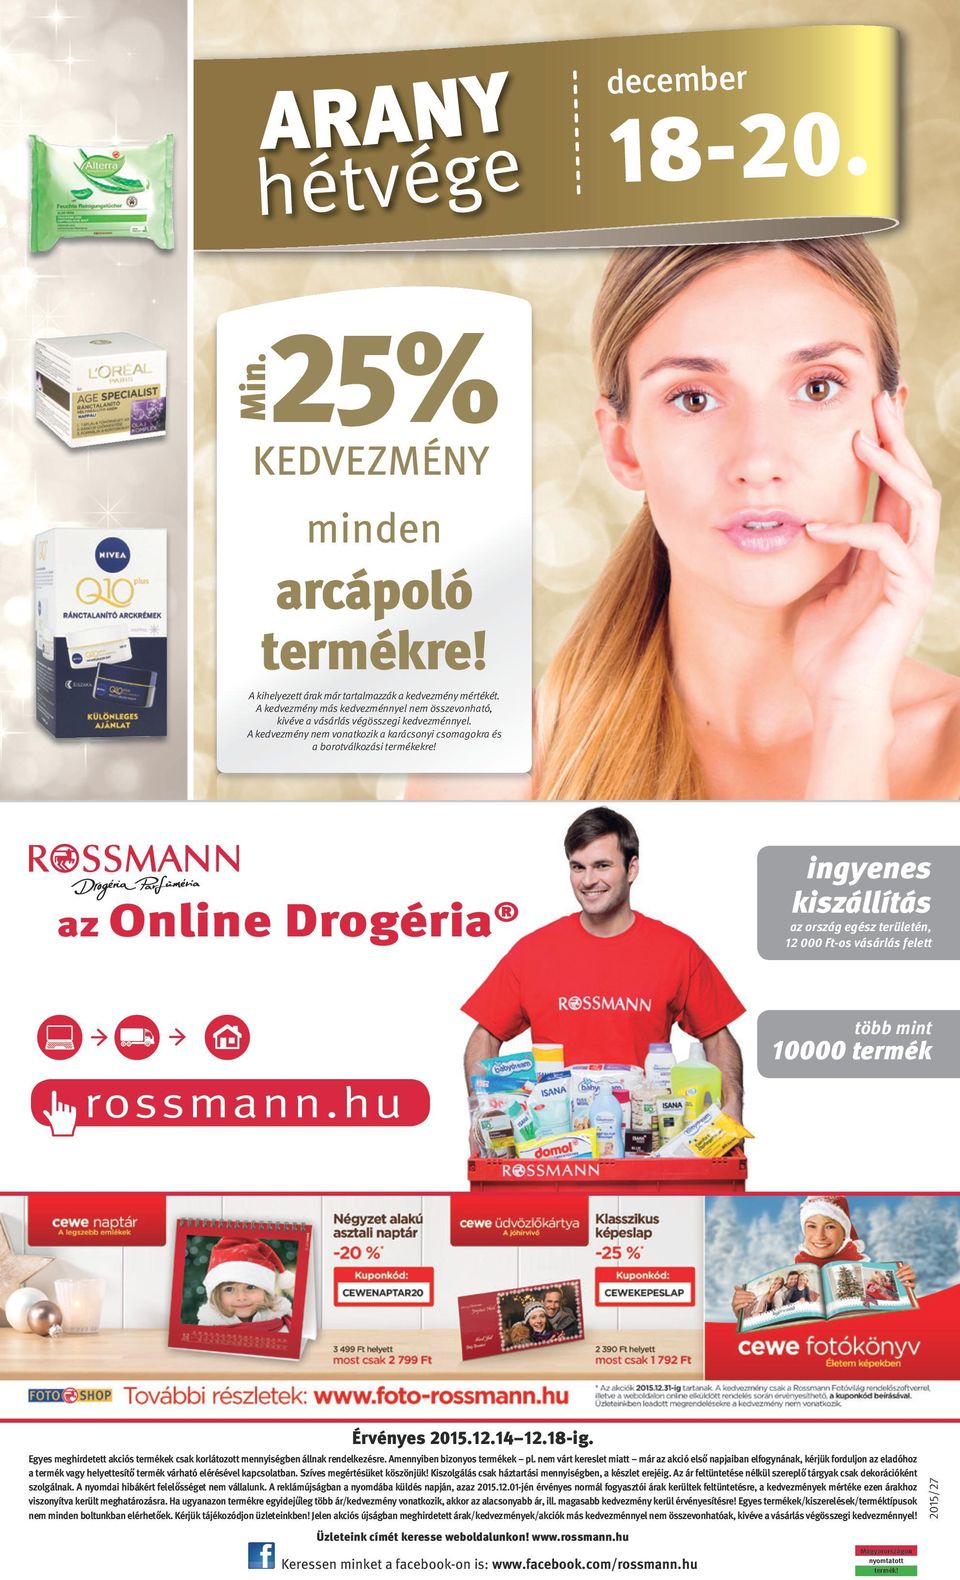 az Online Drogéria ingyenes kiszállítás az ország egész területén, 12 000 -os vásárlás felett több mint 10000 termék rossmann.hu Üzleteink címét keresse weboldalunkon! www.rossmann.hu Keressen minket a facebook-on is: www.